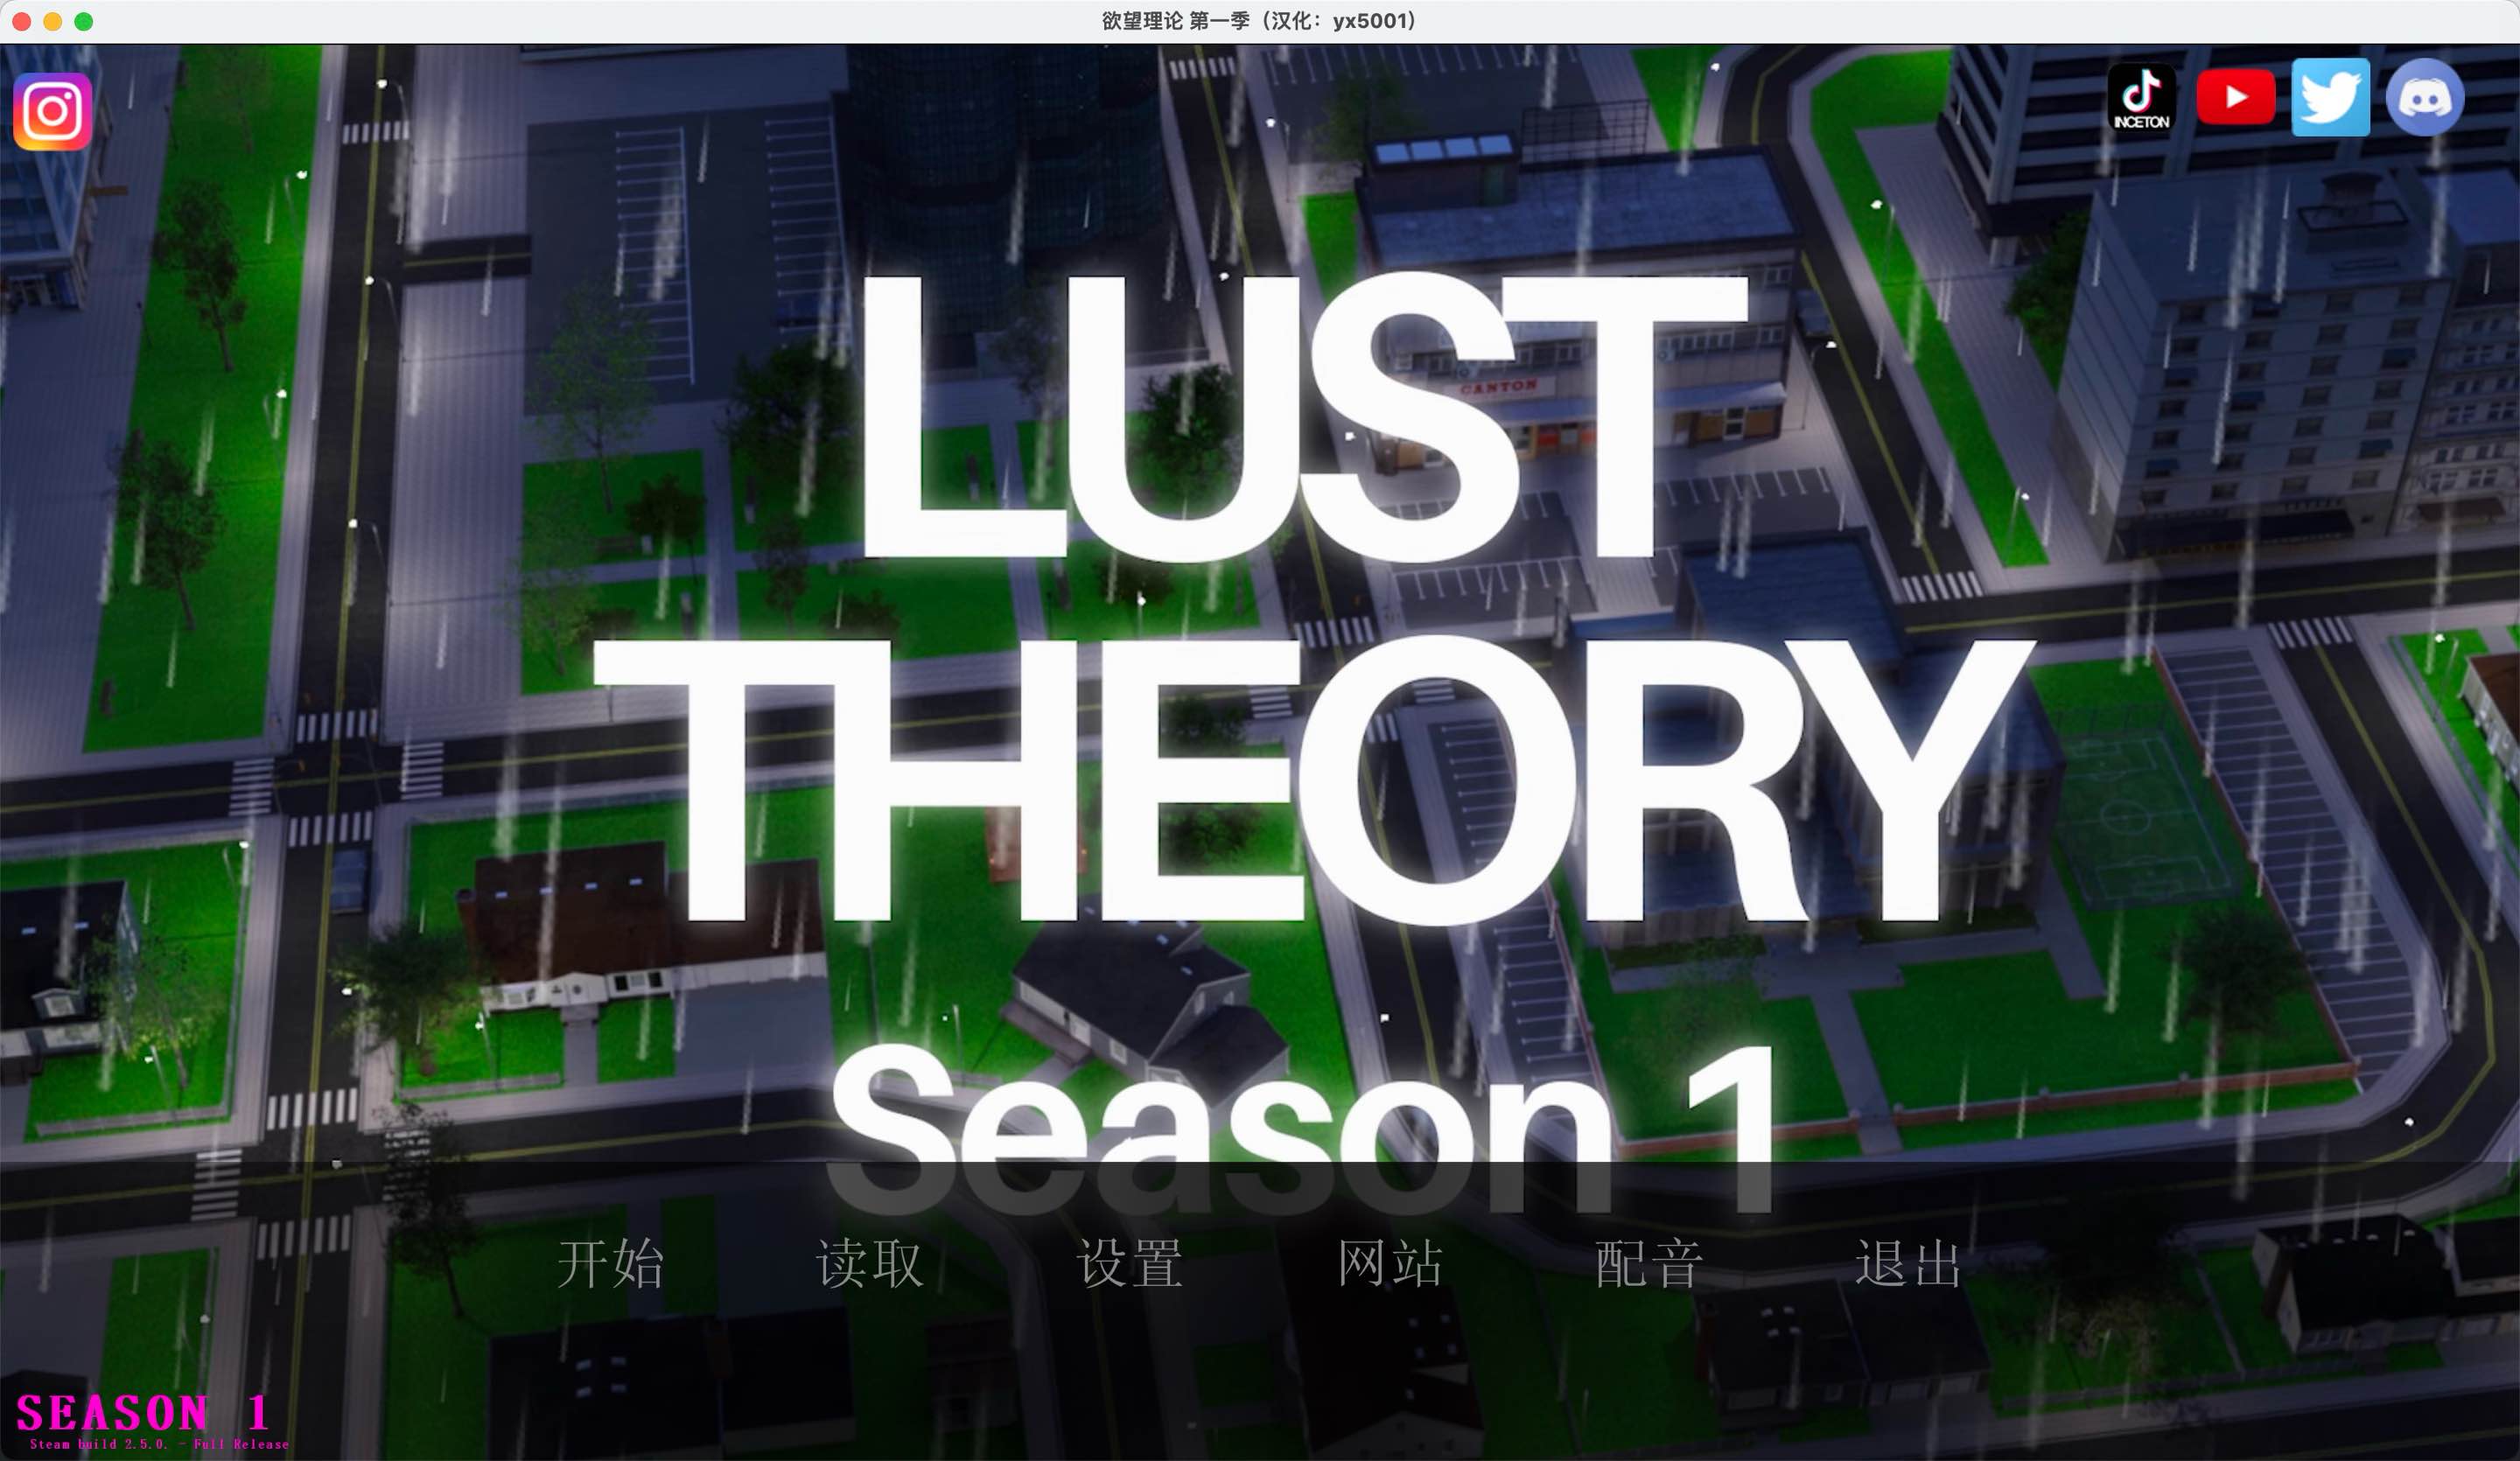 欲望理论-第一季 for Mac v2.5.0 Lust Theory - Season 1 中文原生版 苹果电脑